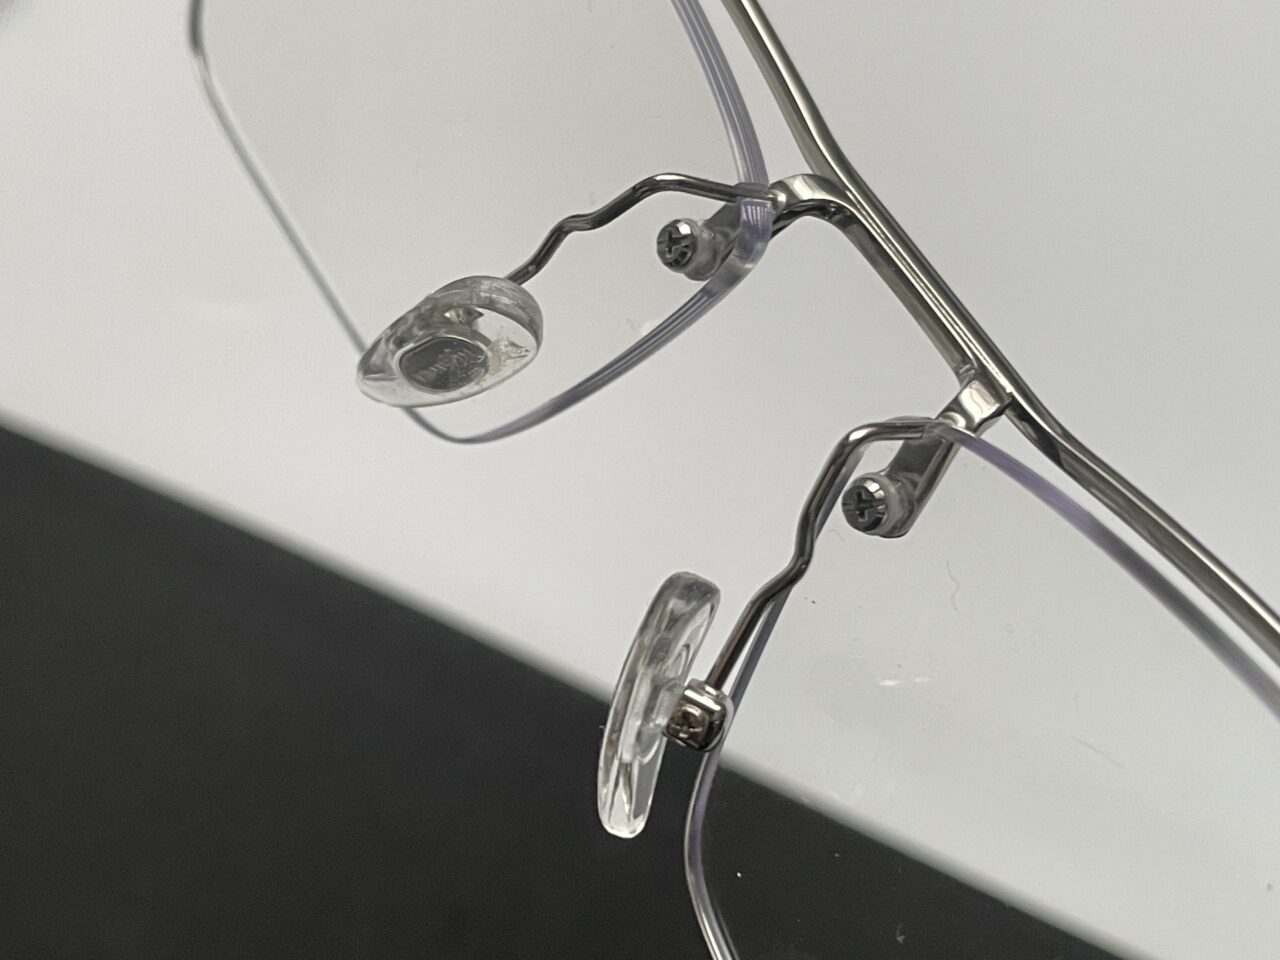 Zbliżenie na przezroczyste okulary z metalową oprawką leżące na białej powierzchni.